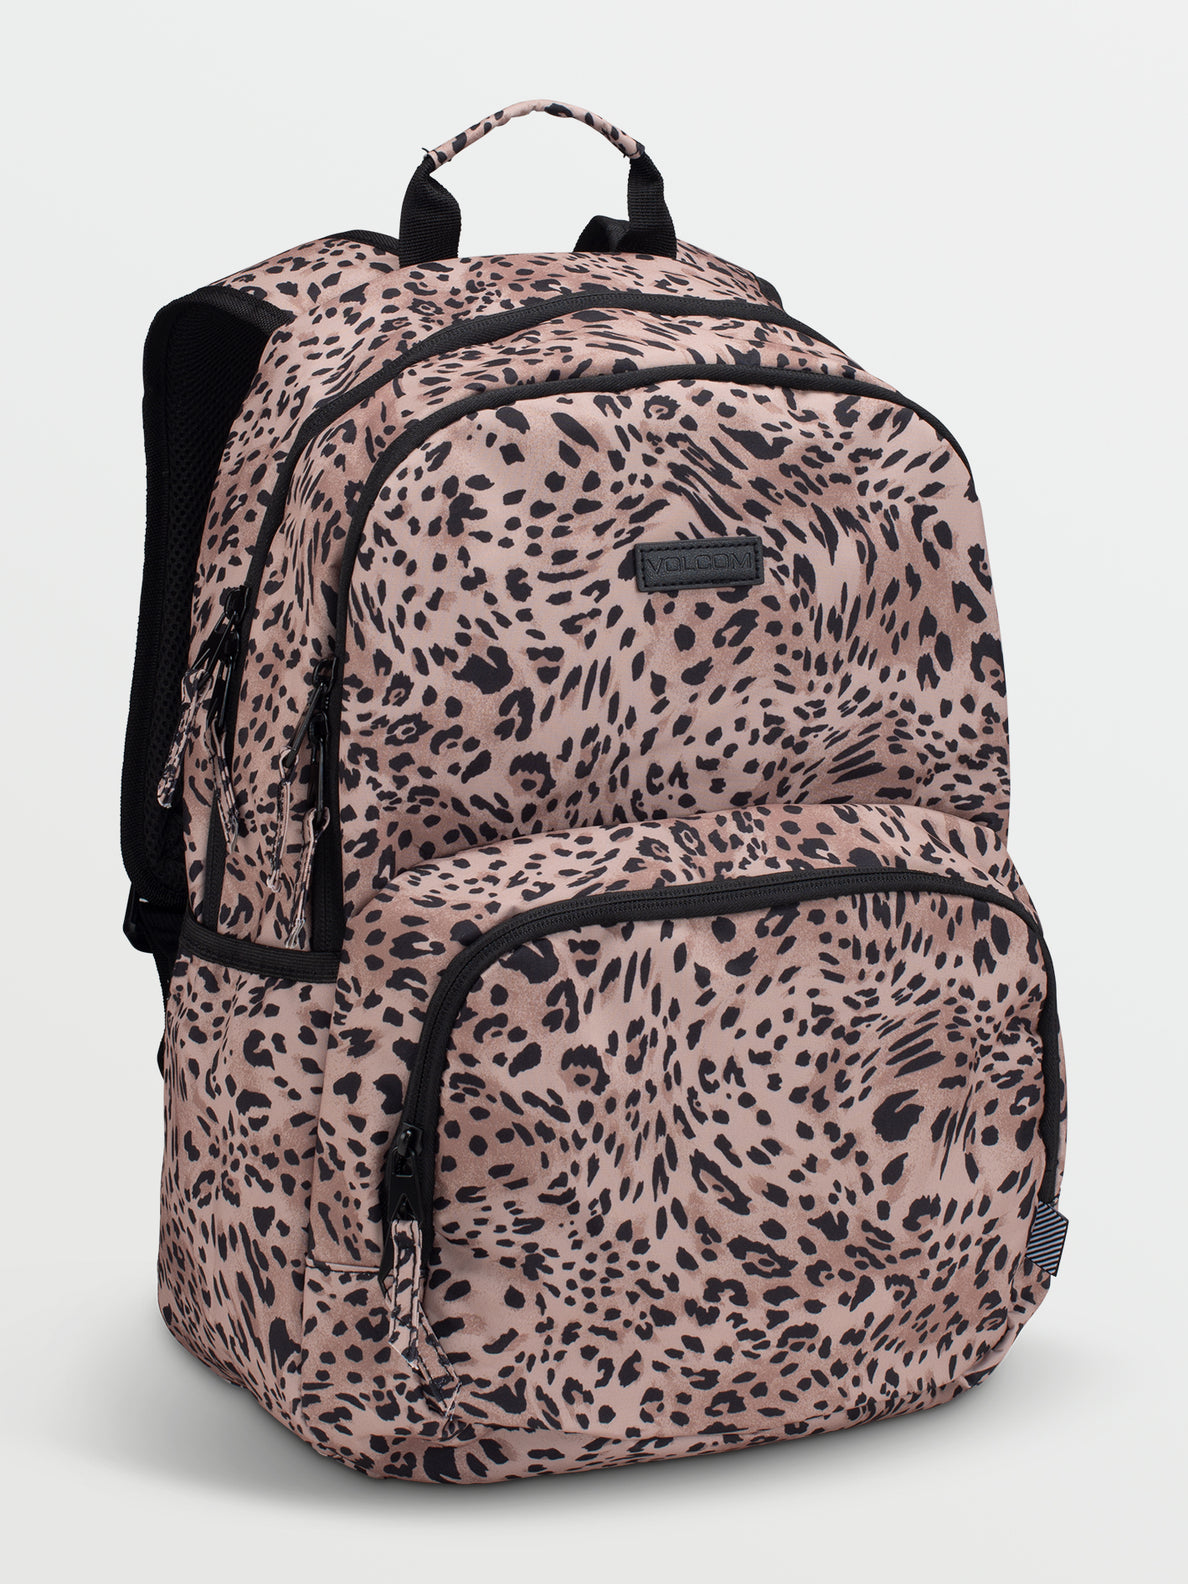 Aitbags Leopard Print Metal Tassel Purse and Handbag India | Ubuy